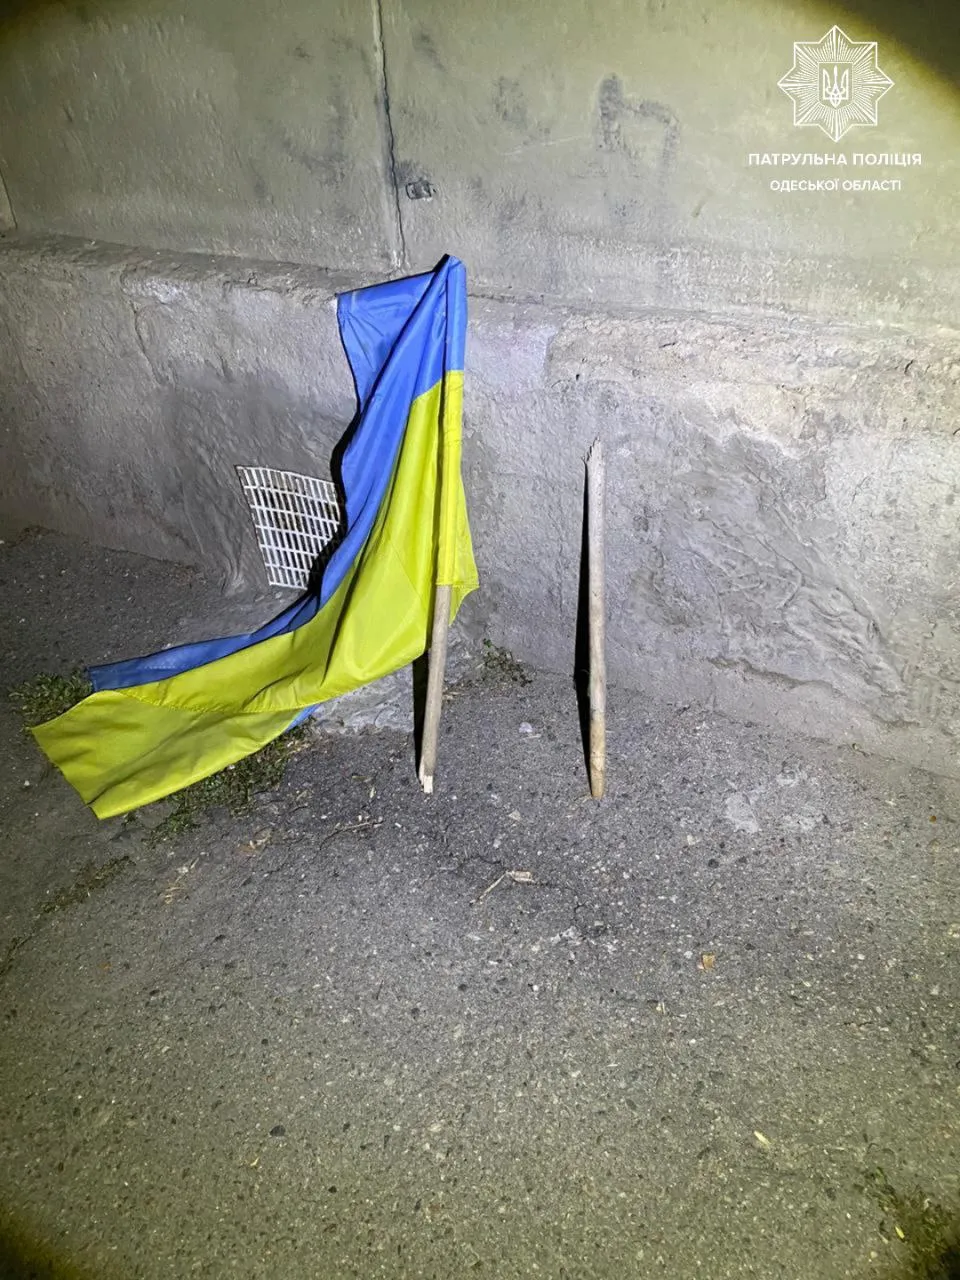 Нарушитель сорвал флаг Украины